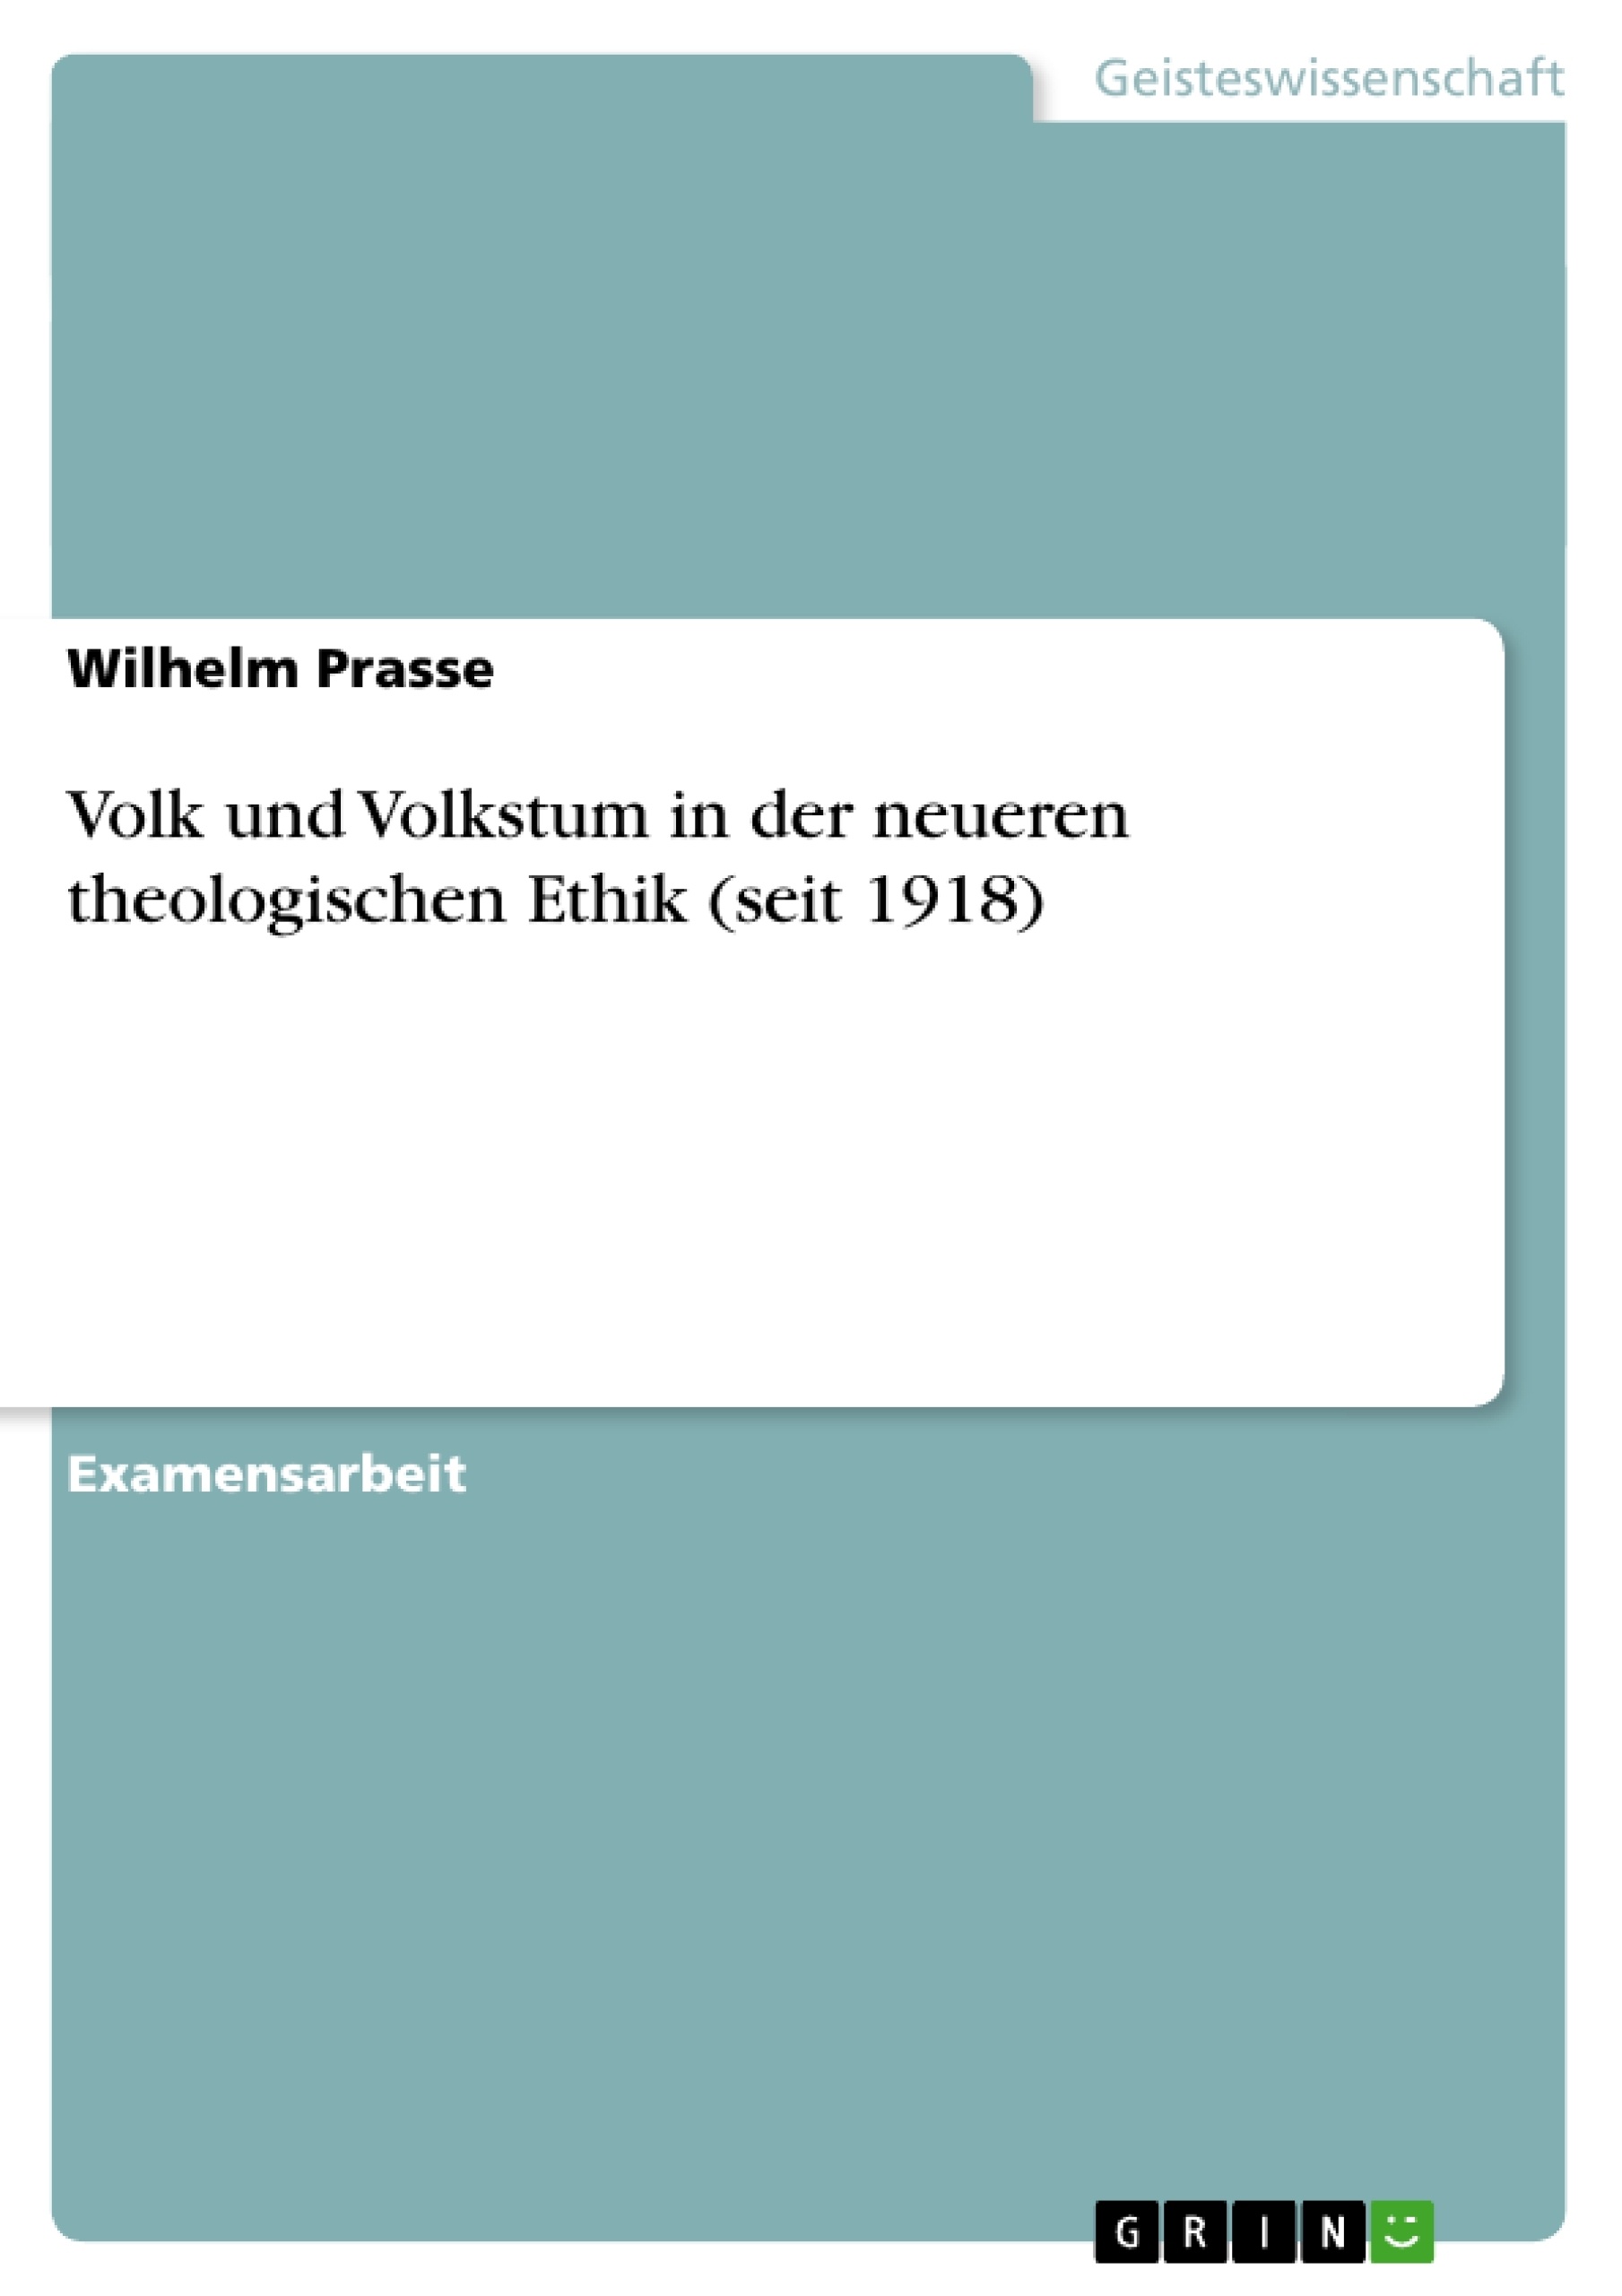 Title: Volk und Volkstum in der neueren theologischen Ethik (seit 1918)